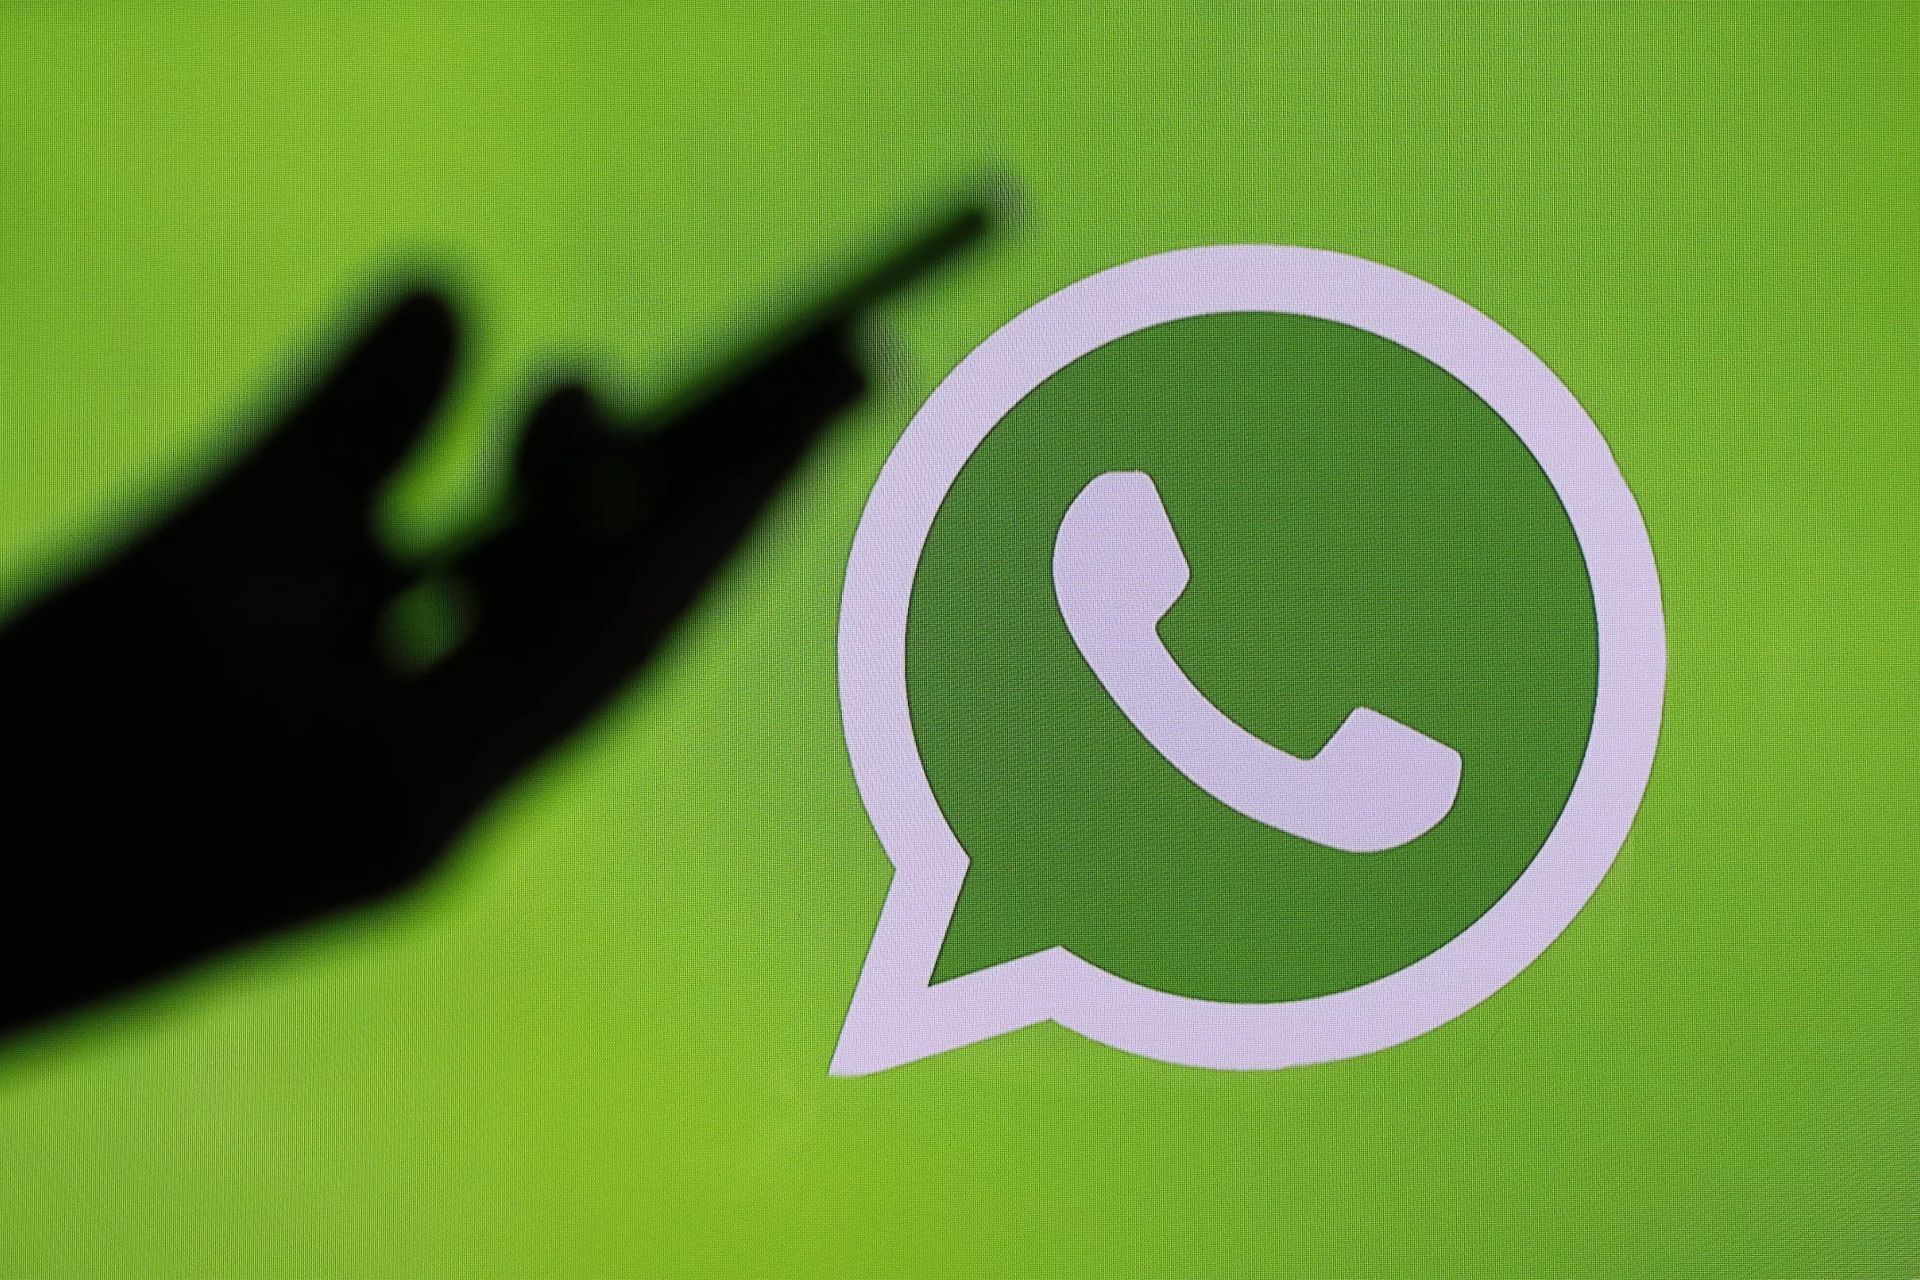 لوگو واتساپ / WhatsApp سبز گوشی در دست یک فرد